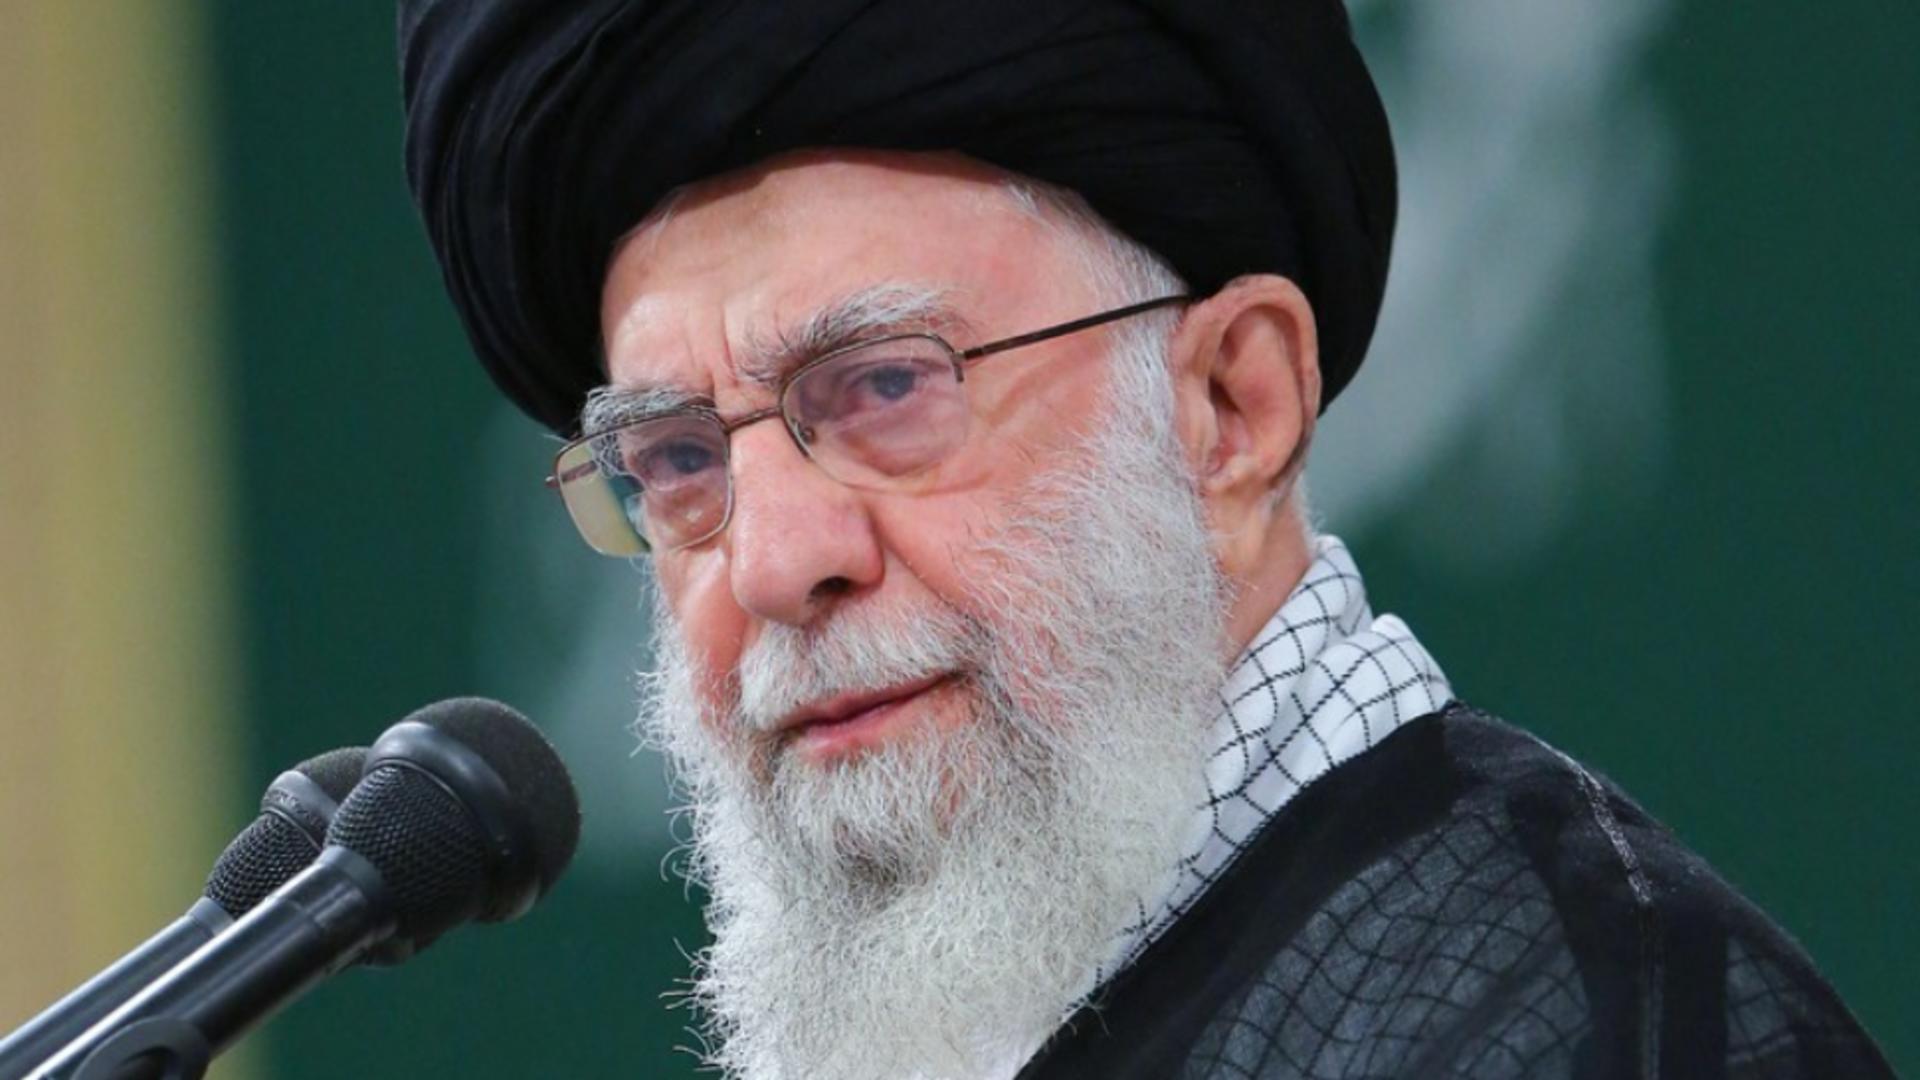 Iranul cheamă oficial la BOICOT împotriva Israel, după atacul Hamas - Khamenei a lansat semnalul / Foto: Profi Media